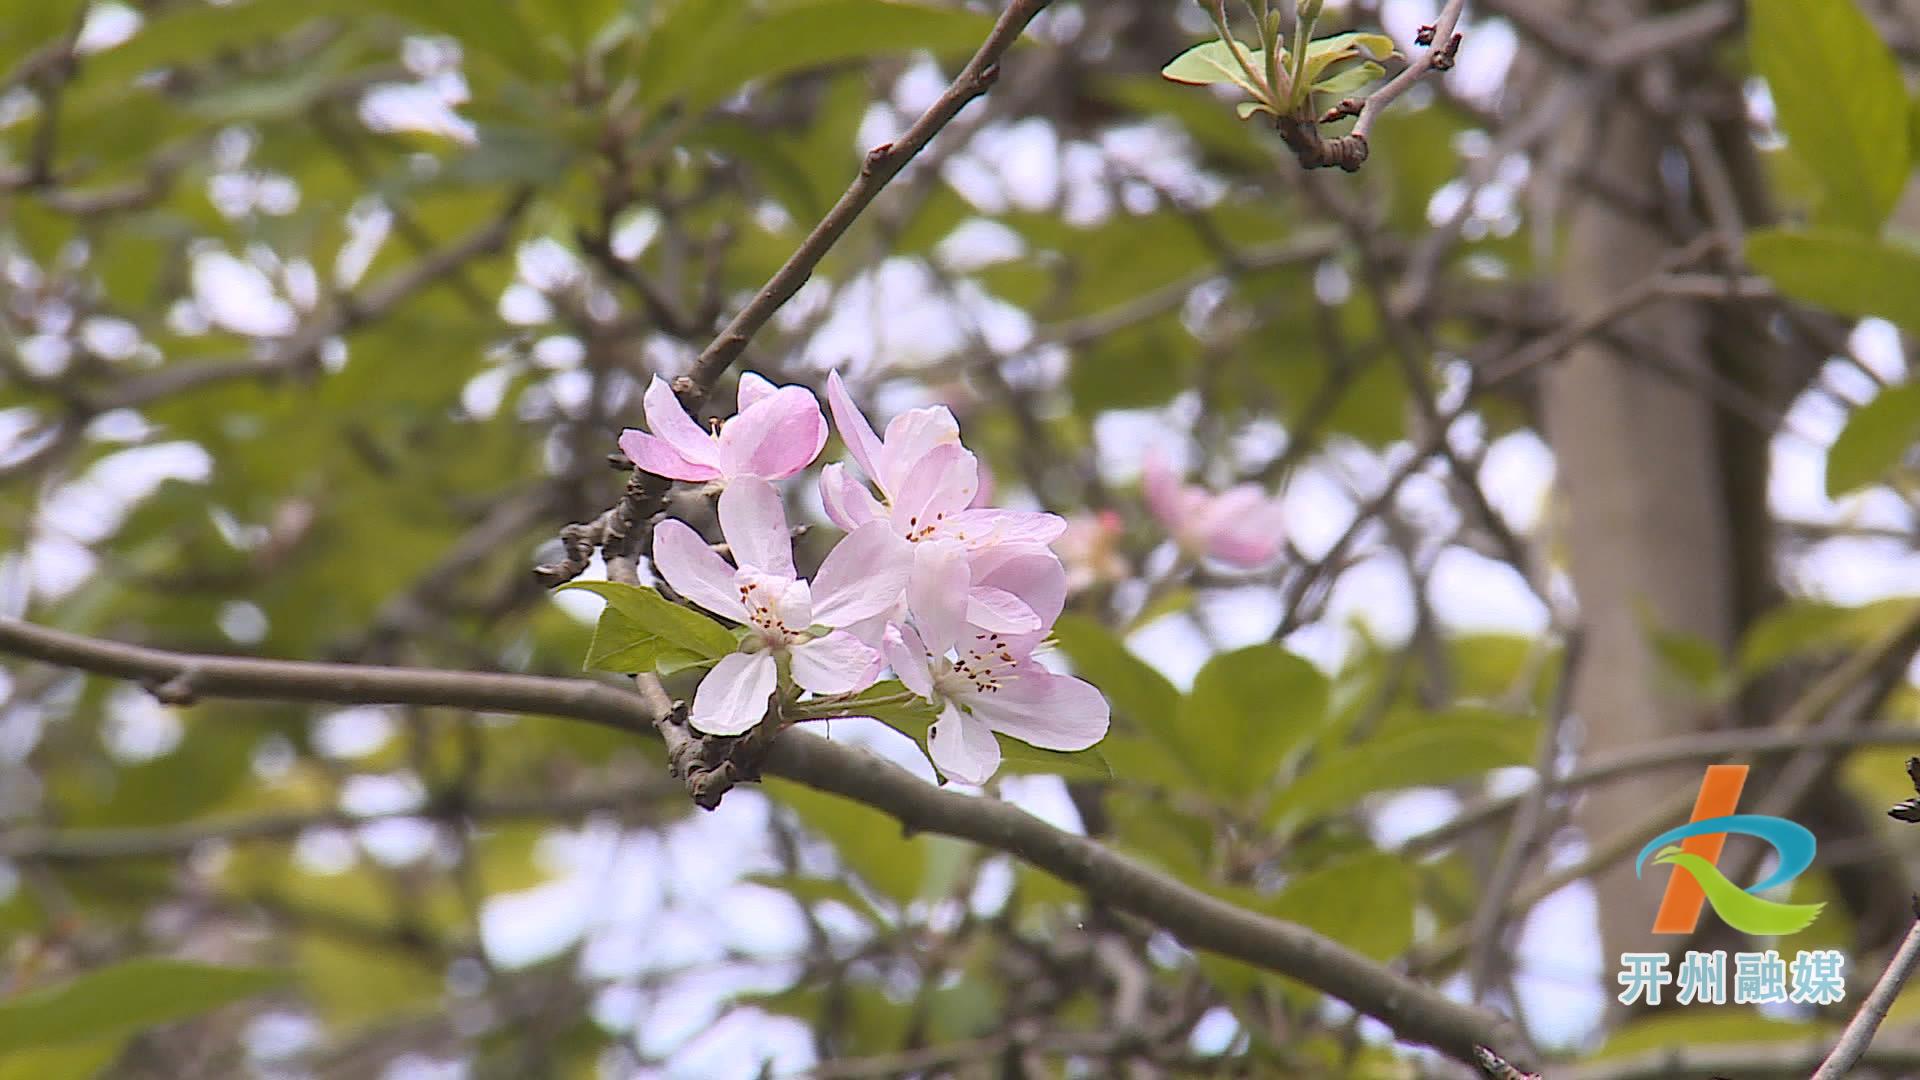 滨湖公园的多种花卉错季开放 形成了现在是春天的假象！‘NG官网APP下载’(图8)